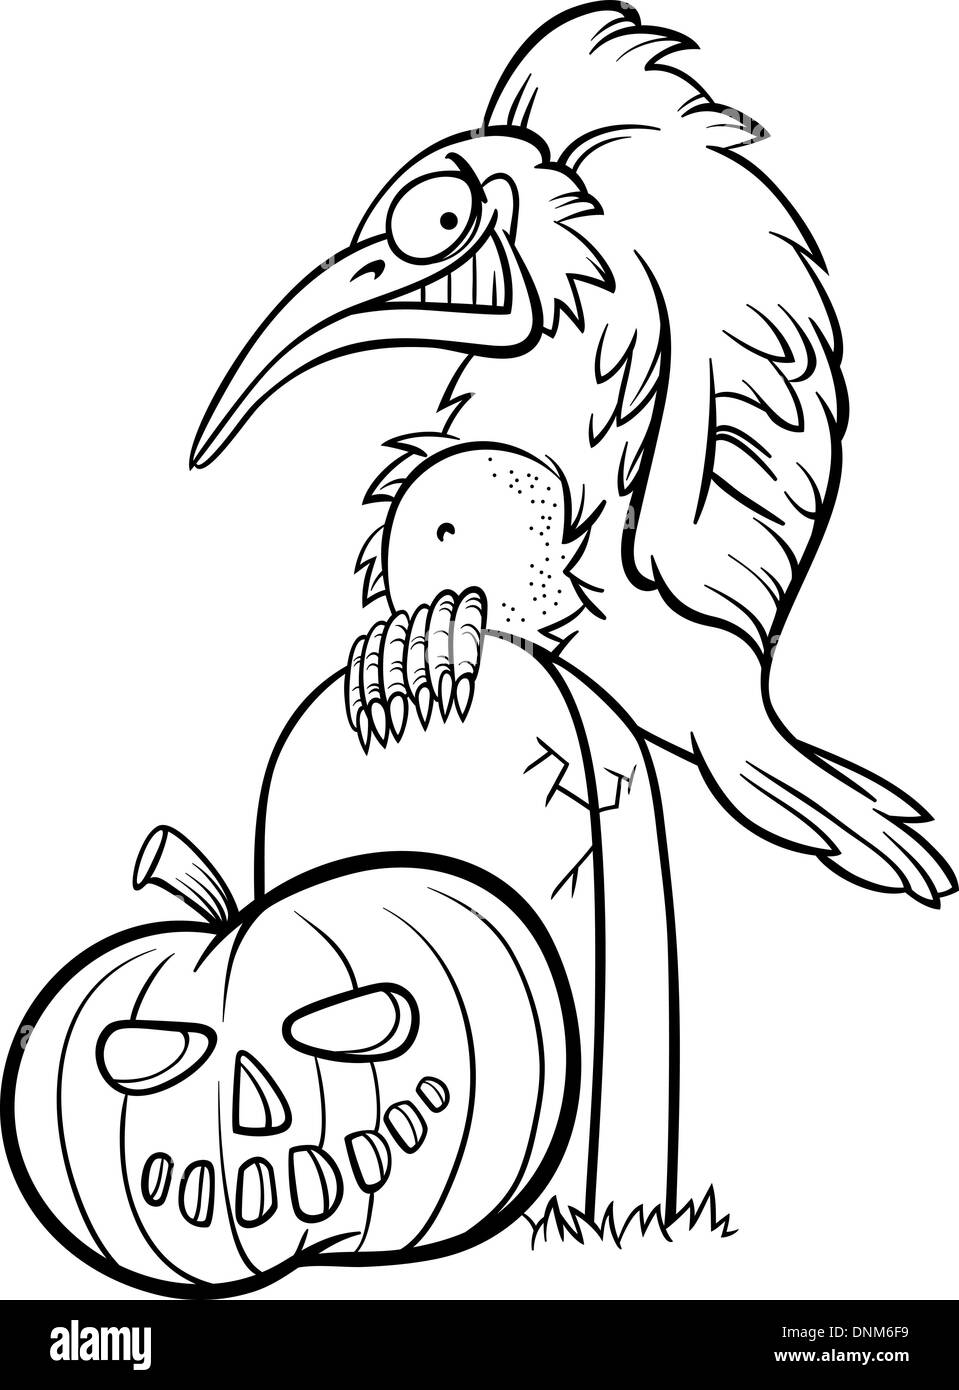 Illustration Cartoon noir et blanc de Spooky ou Raven Crow sur la tombe avec Halloween citrouille pour Coloring Book Illustration de Vecteur